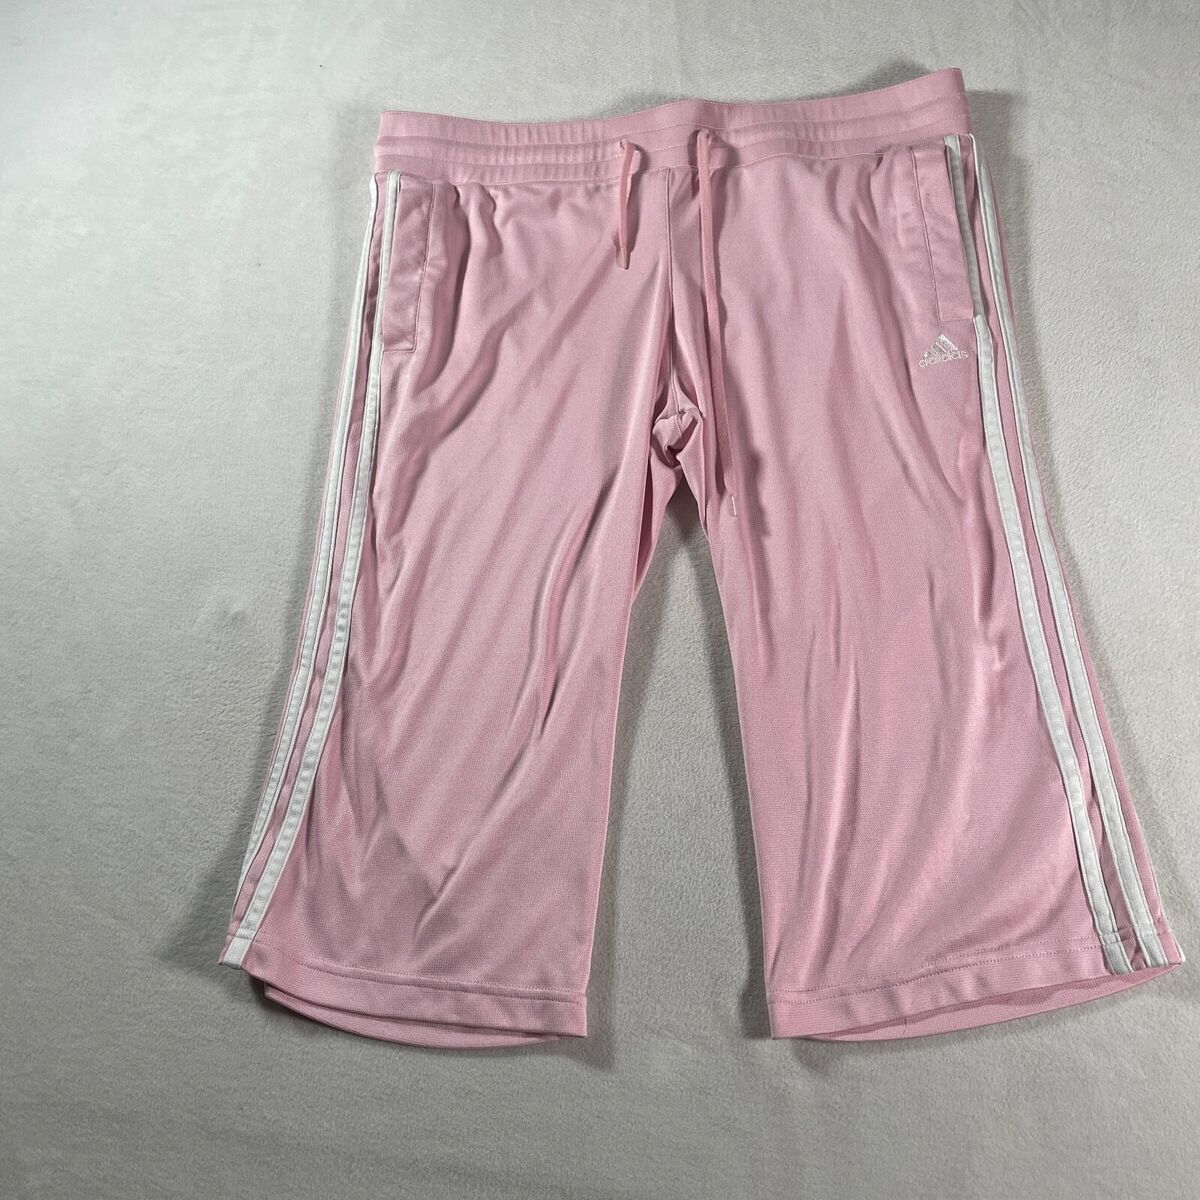 Adidas Sweatpants Large Womens Pink Pants Basketball Sports Warm